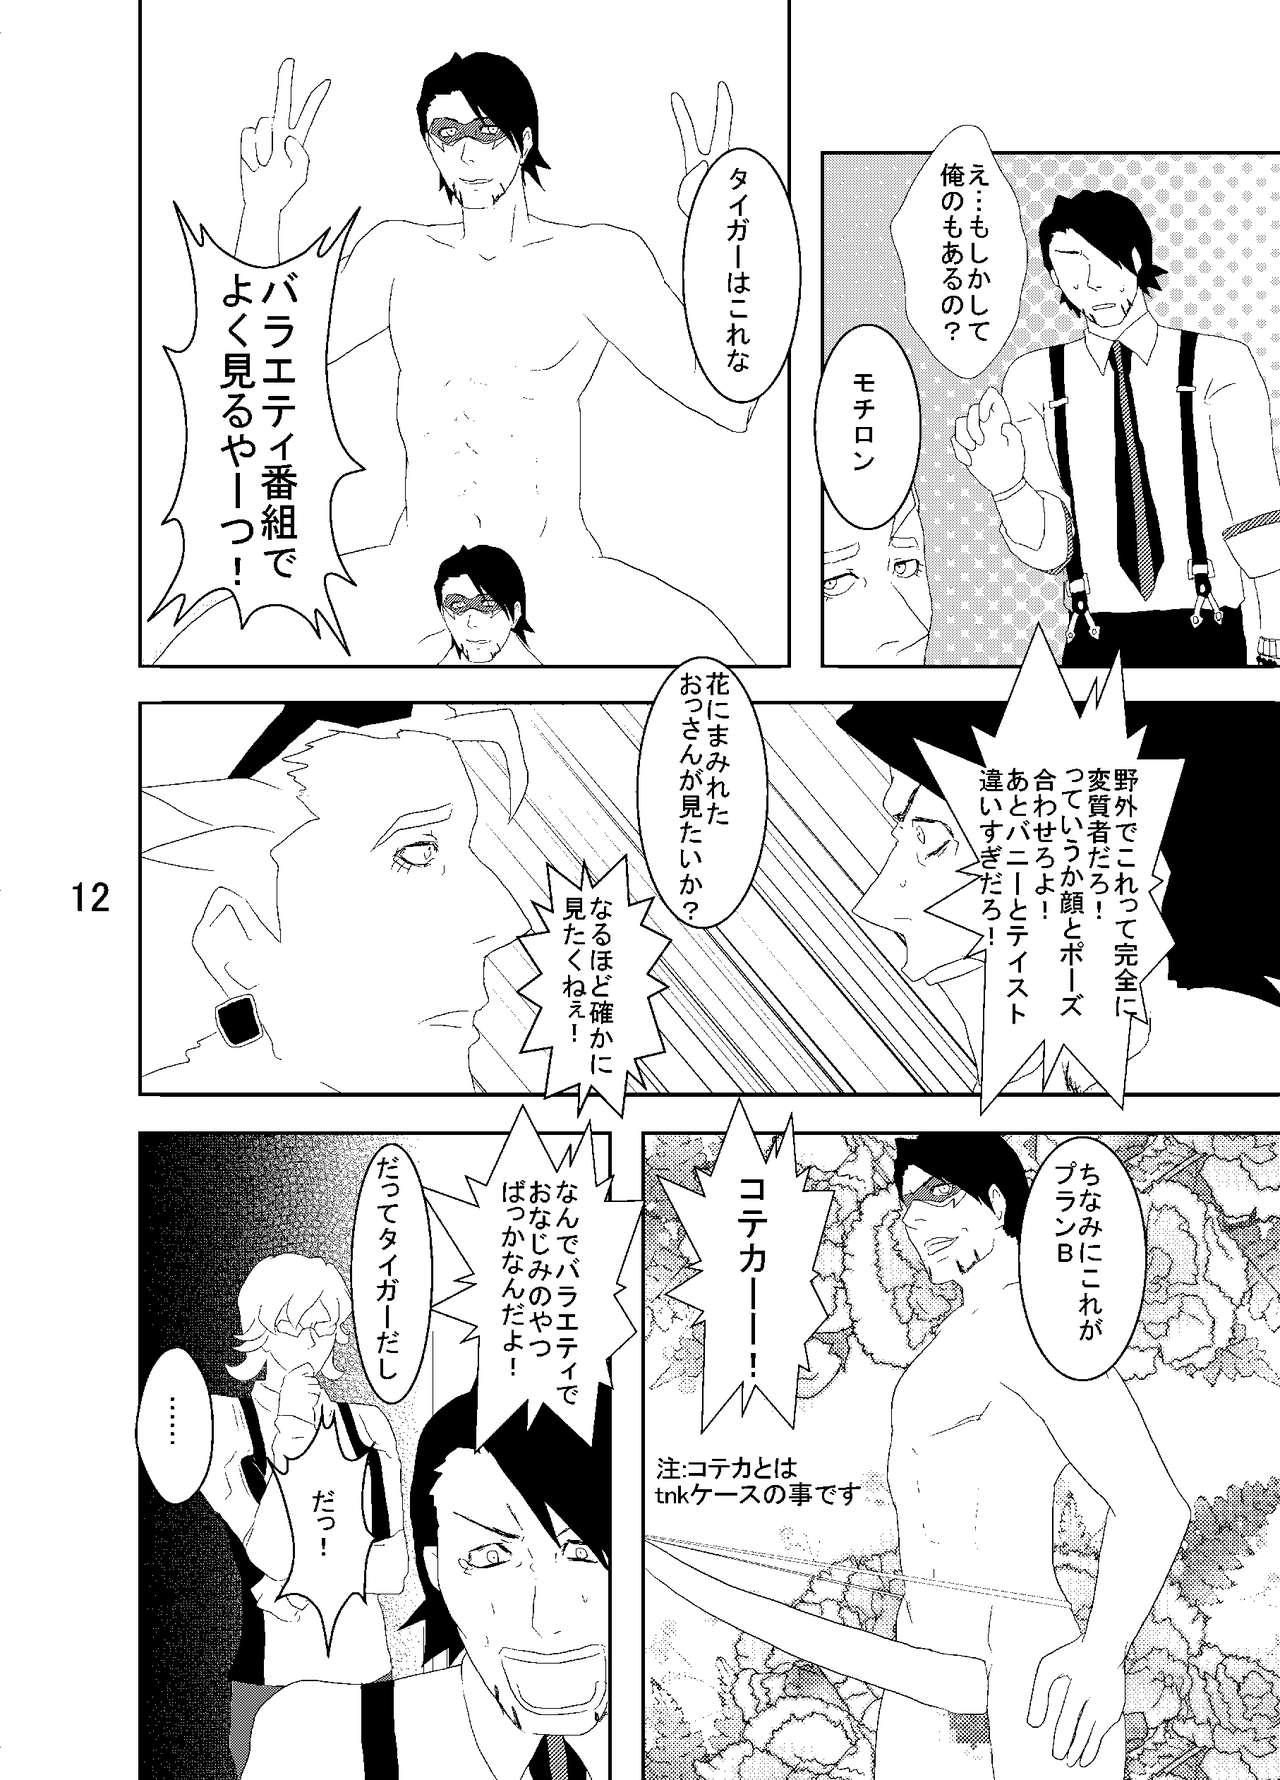 Skirt Web Sairoku Tora Umoto Sono 2 - Tiger and bunny Cam Girl - Page 12